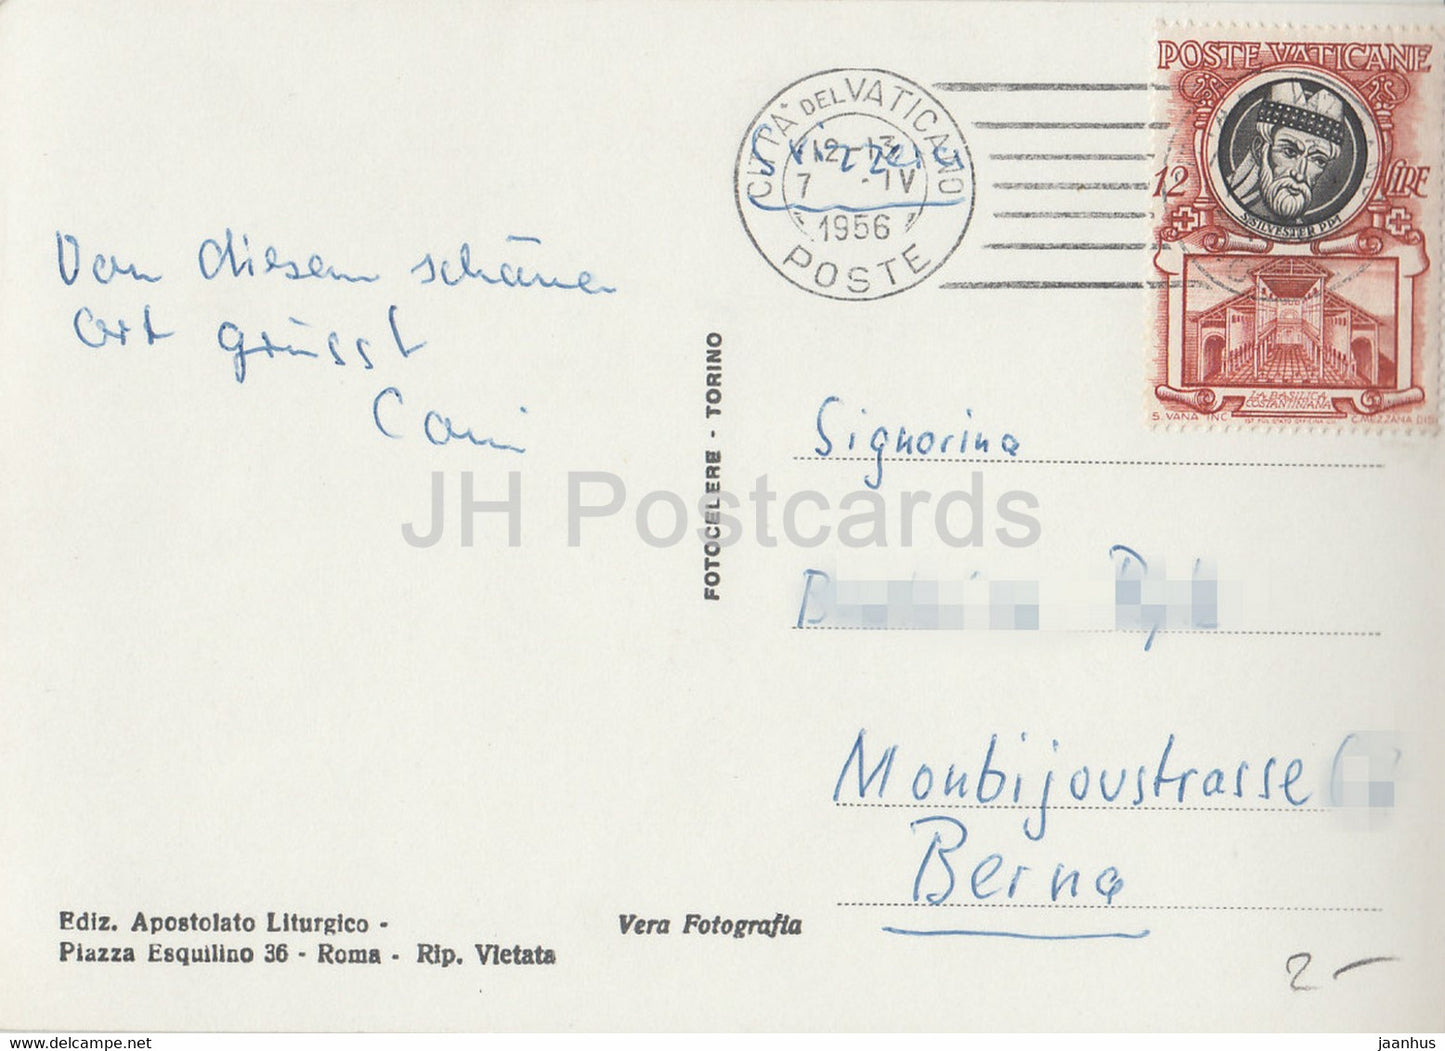 Citta del Vaticano - Basilique e Colonnato del Bernini - cathédrale - colonnade - 1956 - carte postale ancienne - Vatican - utilisé